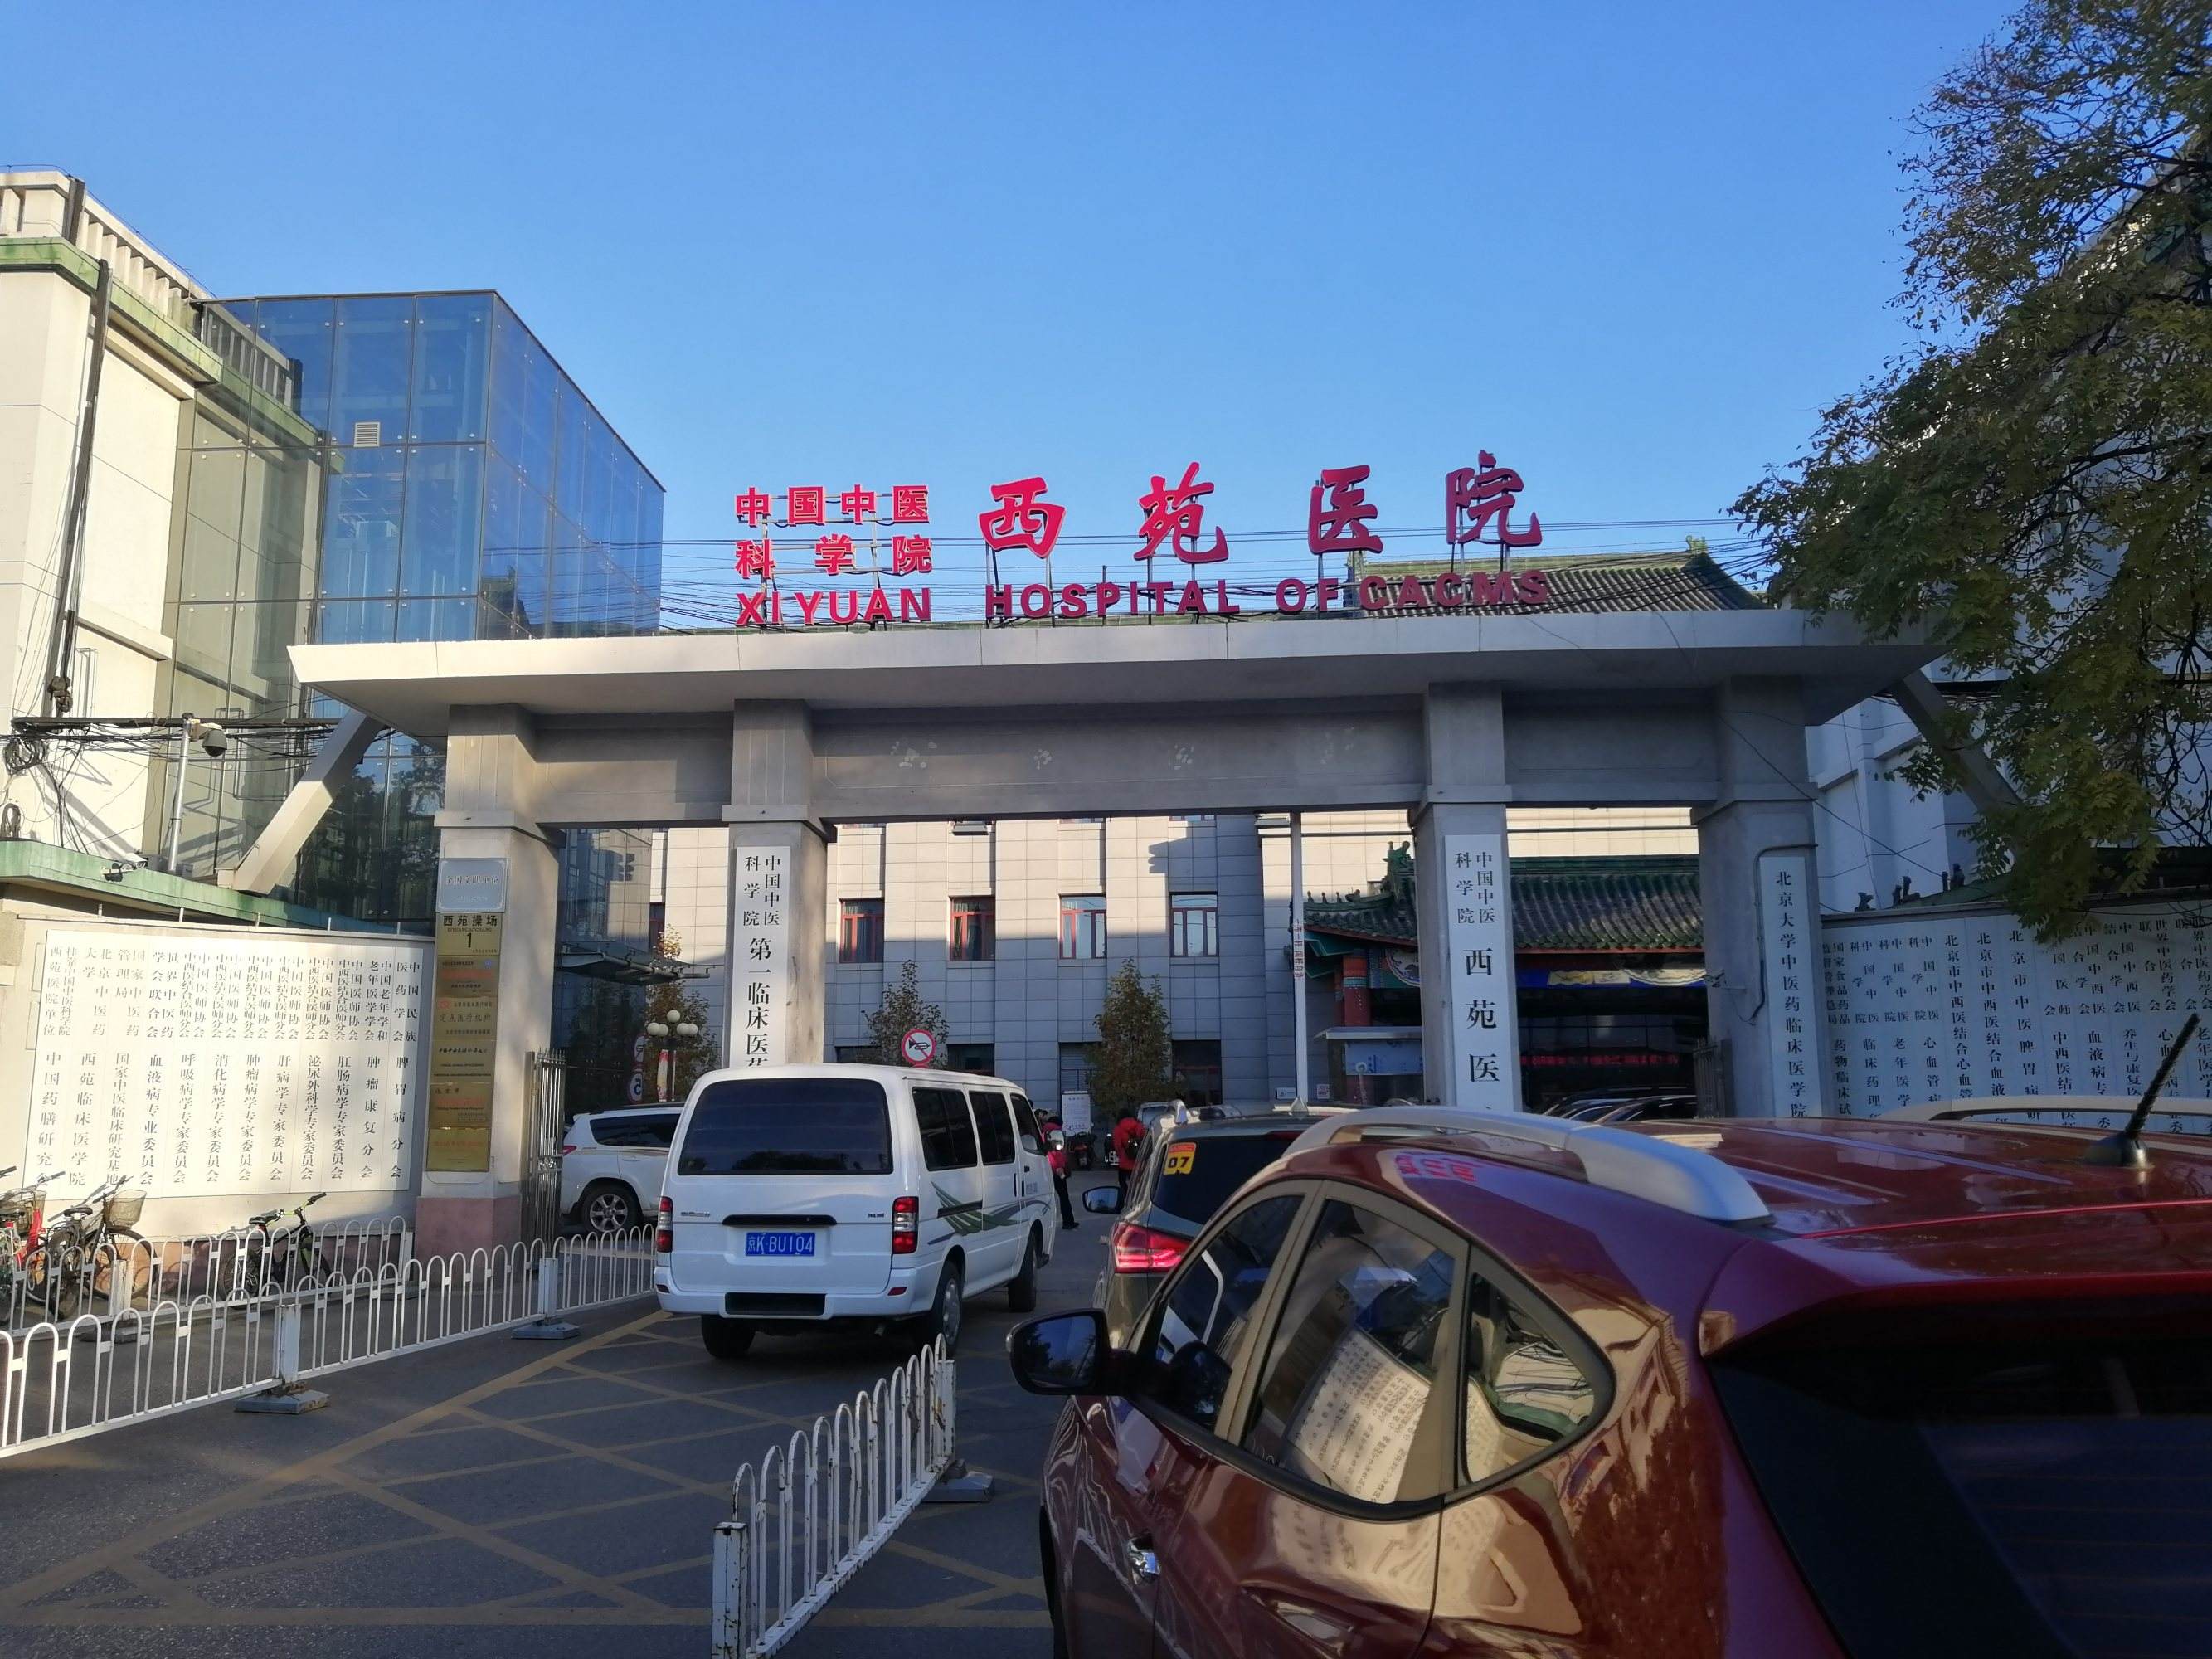 中国中医科学院西苑医院靠谱黄牛确实能挂到号!的简单介绍